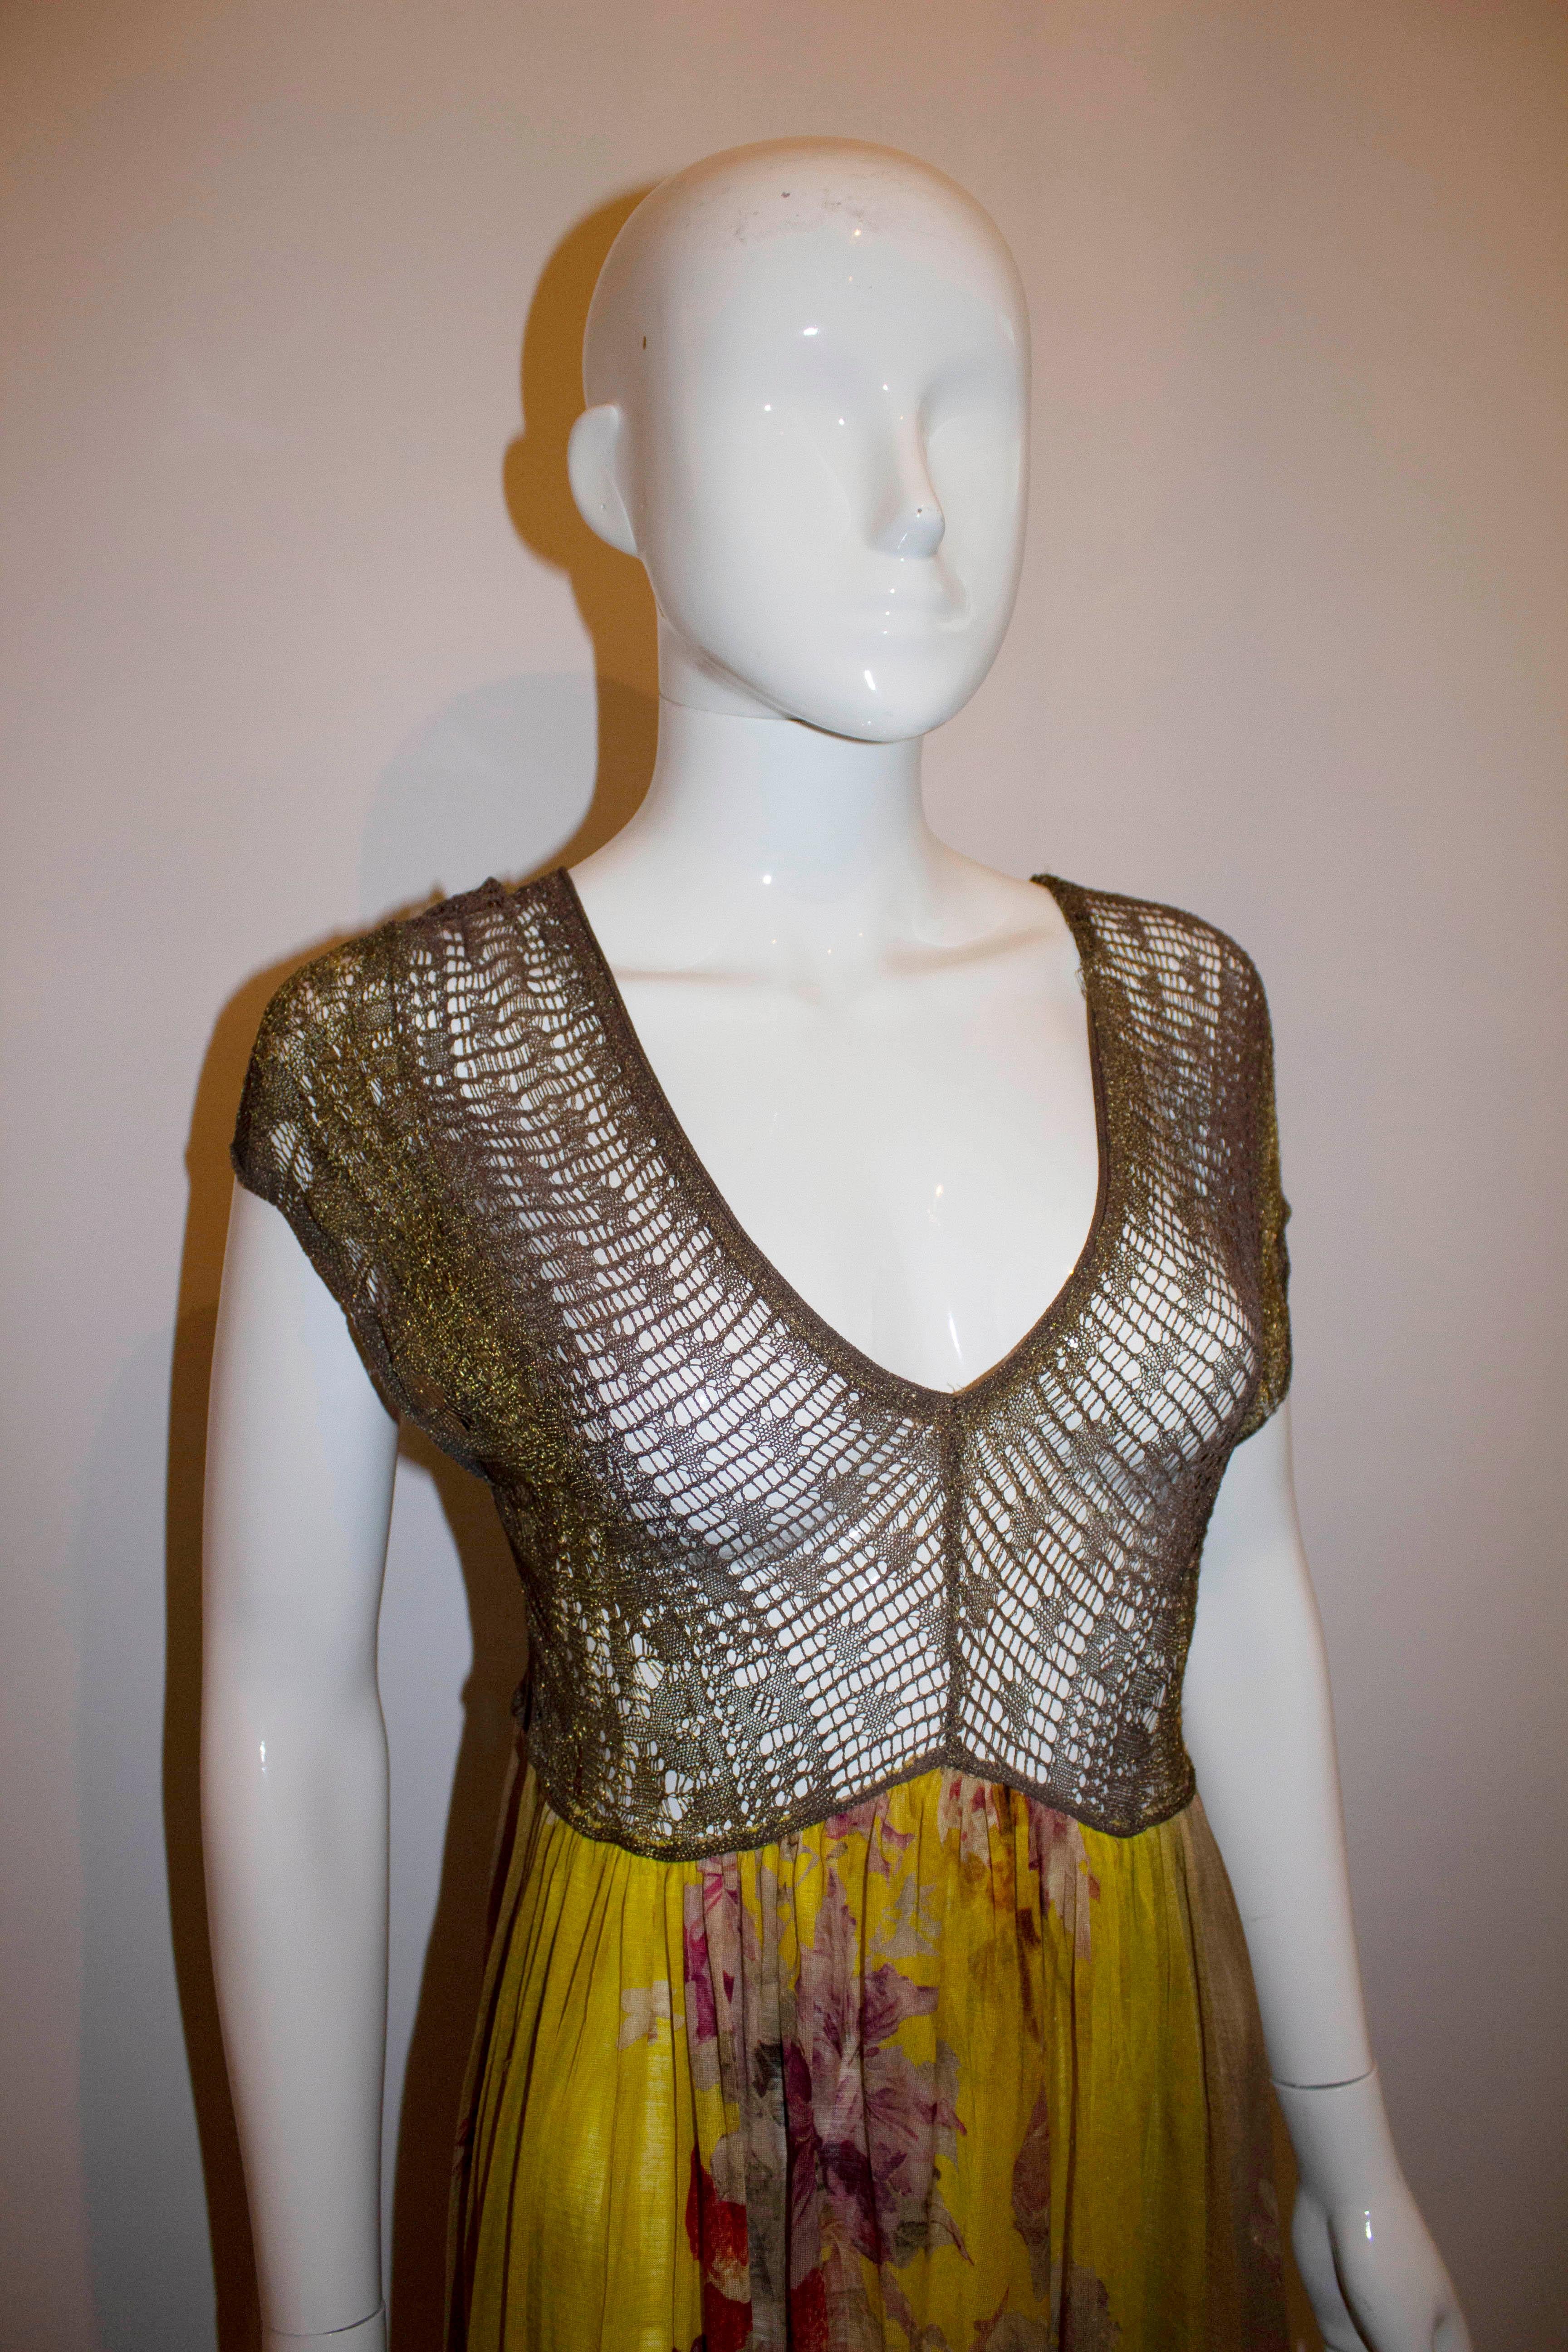 Une fabuleuse robe vintage de la ligne Maille Femme de Jean Paul Gaultier. La robe présente un corsage en tissage or et marron, avec un décolleté en V et une ligne de dos. La partie inférieure présente un fond jaune imprimé de raisins et de fleurs.